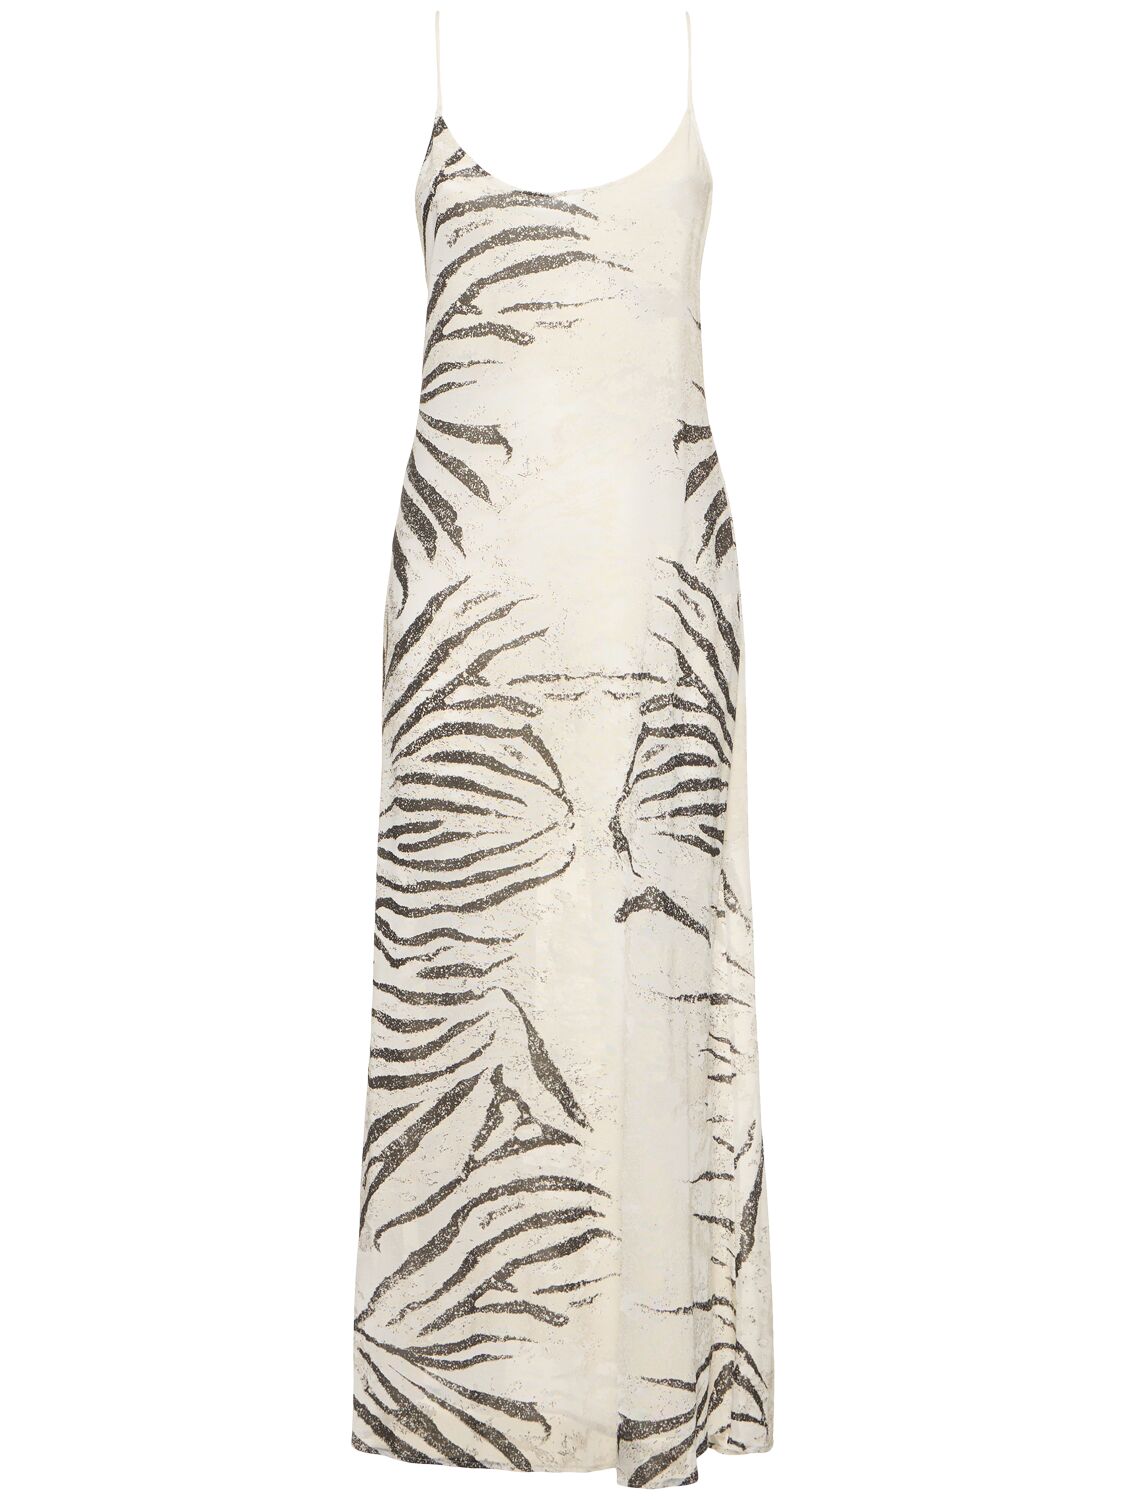 Roberto Cavalli Zebra Printed Viscose Devoré Long Dress In White/black